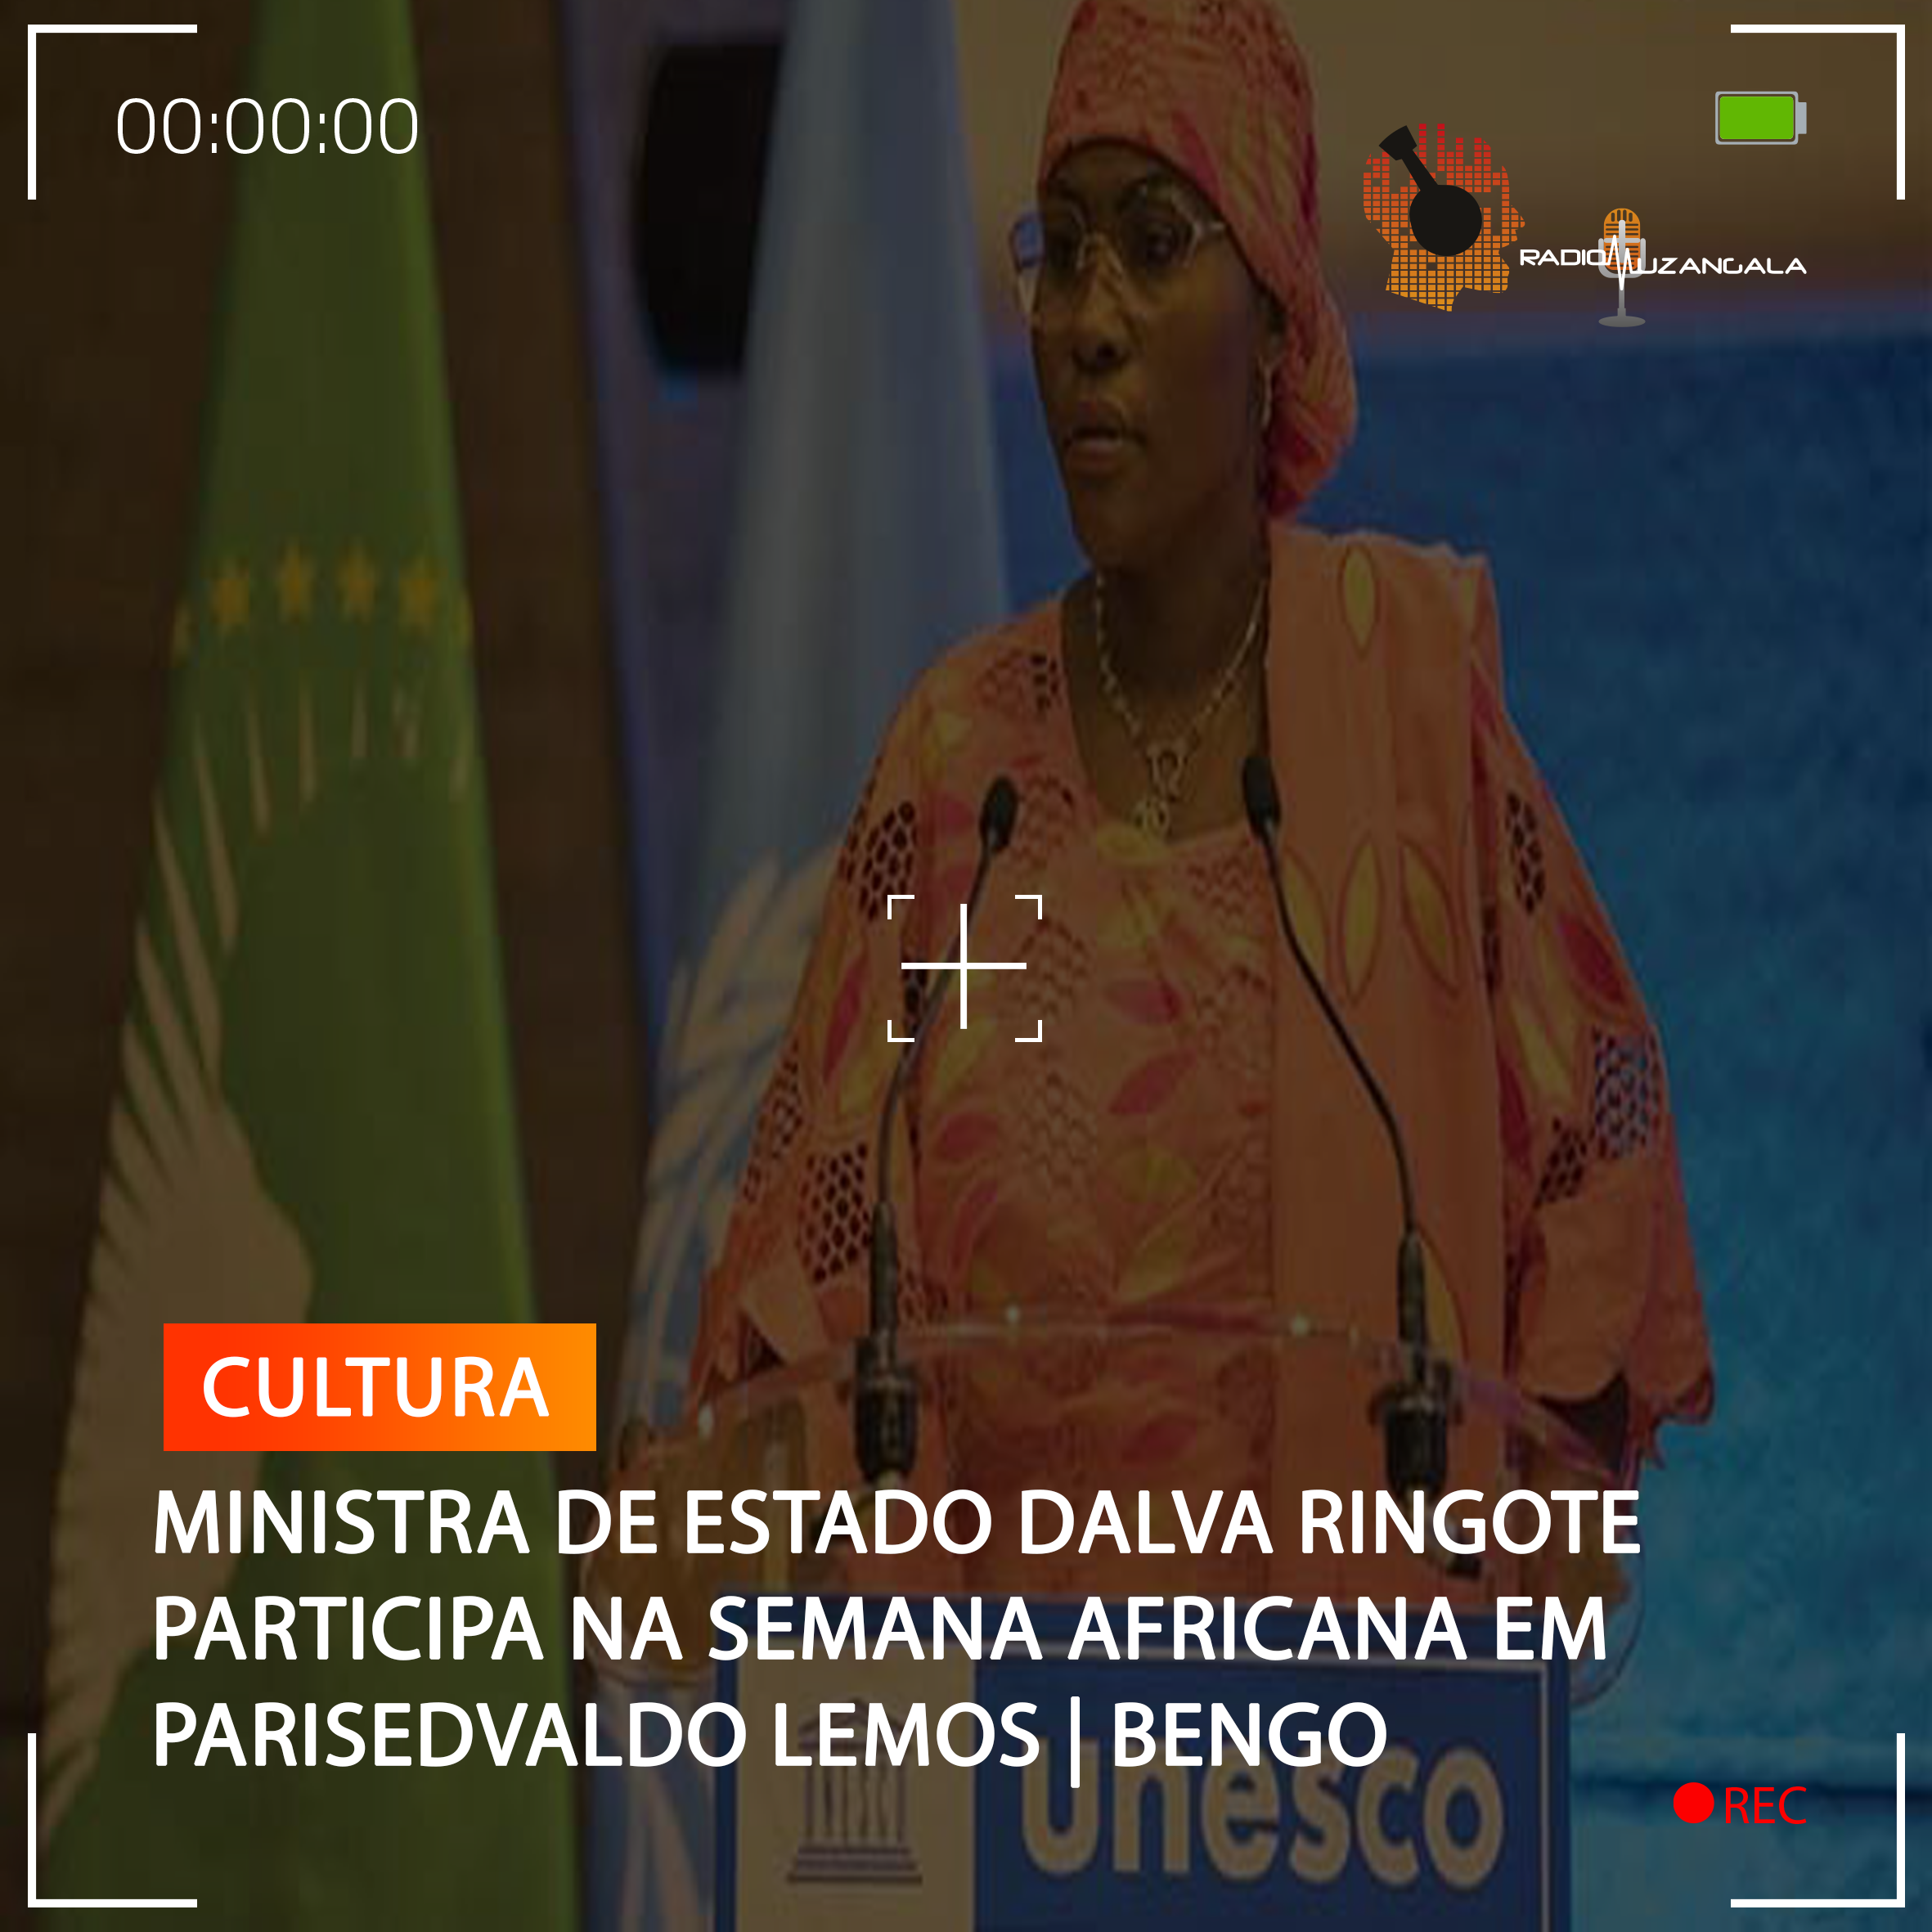  MINISTRA DE ESTADO DALVA RINGOTE PARTICIPA NA SEMANA AFRICANA EM PARIS